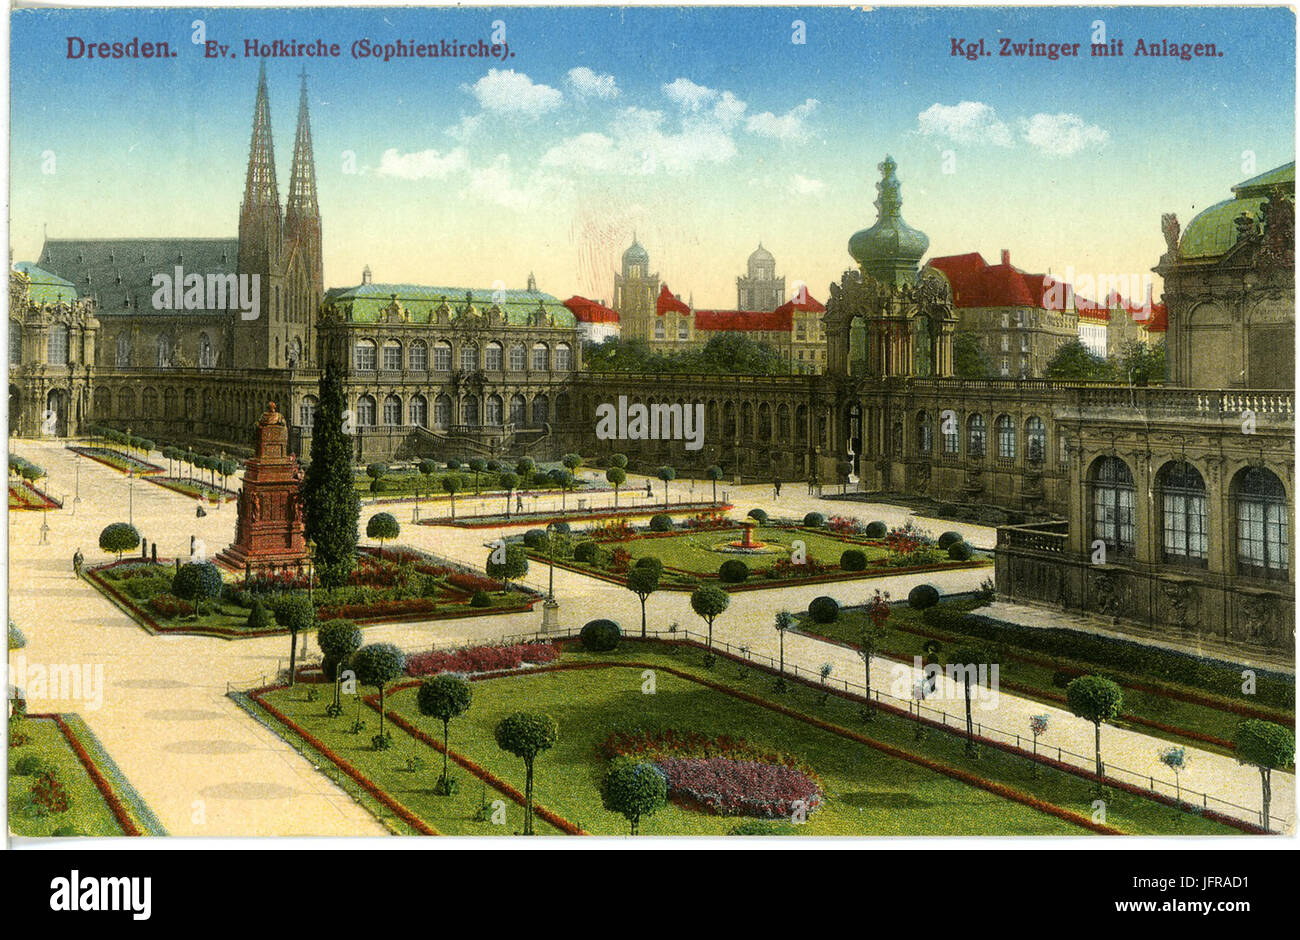 17996-Dresden-1914-Königlicher Zwinger mit Anlagen, Sophienkirche-Brück & Sohn Kunstverlag Stock Photo